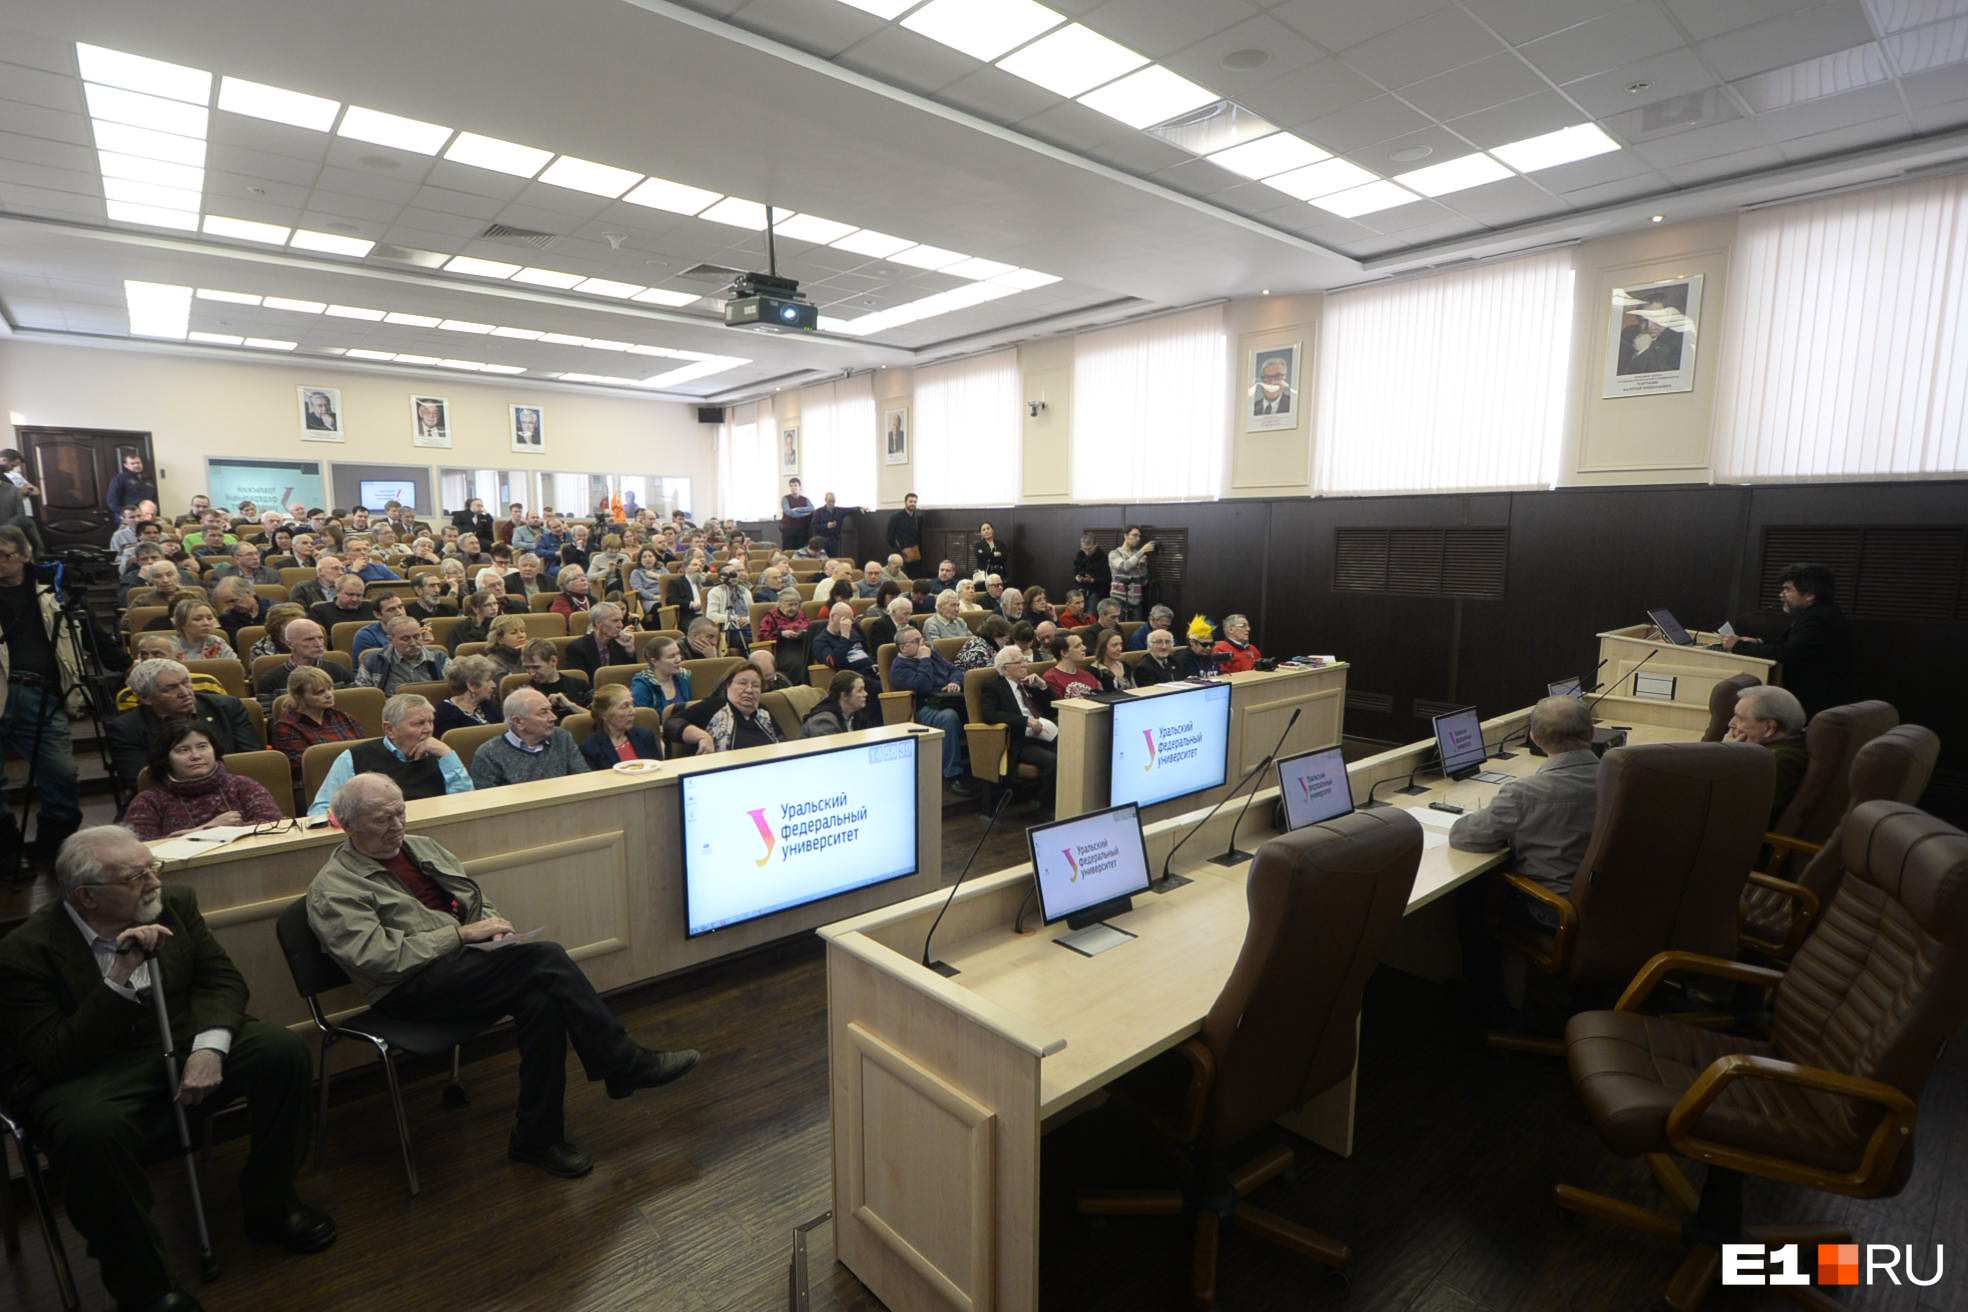 Ежегодная конференция памяти группы Игоря Дятлова прошла в главном корпусе УрФУ